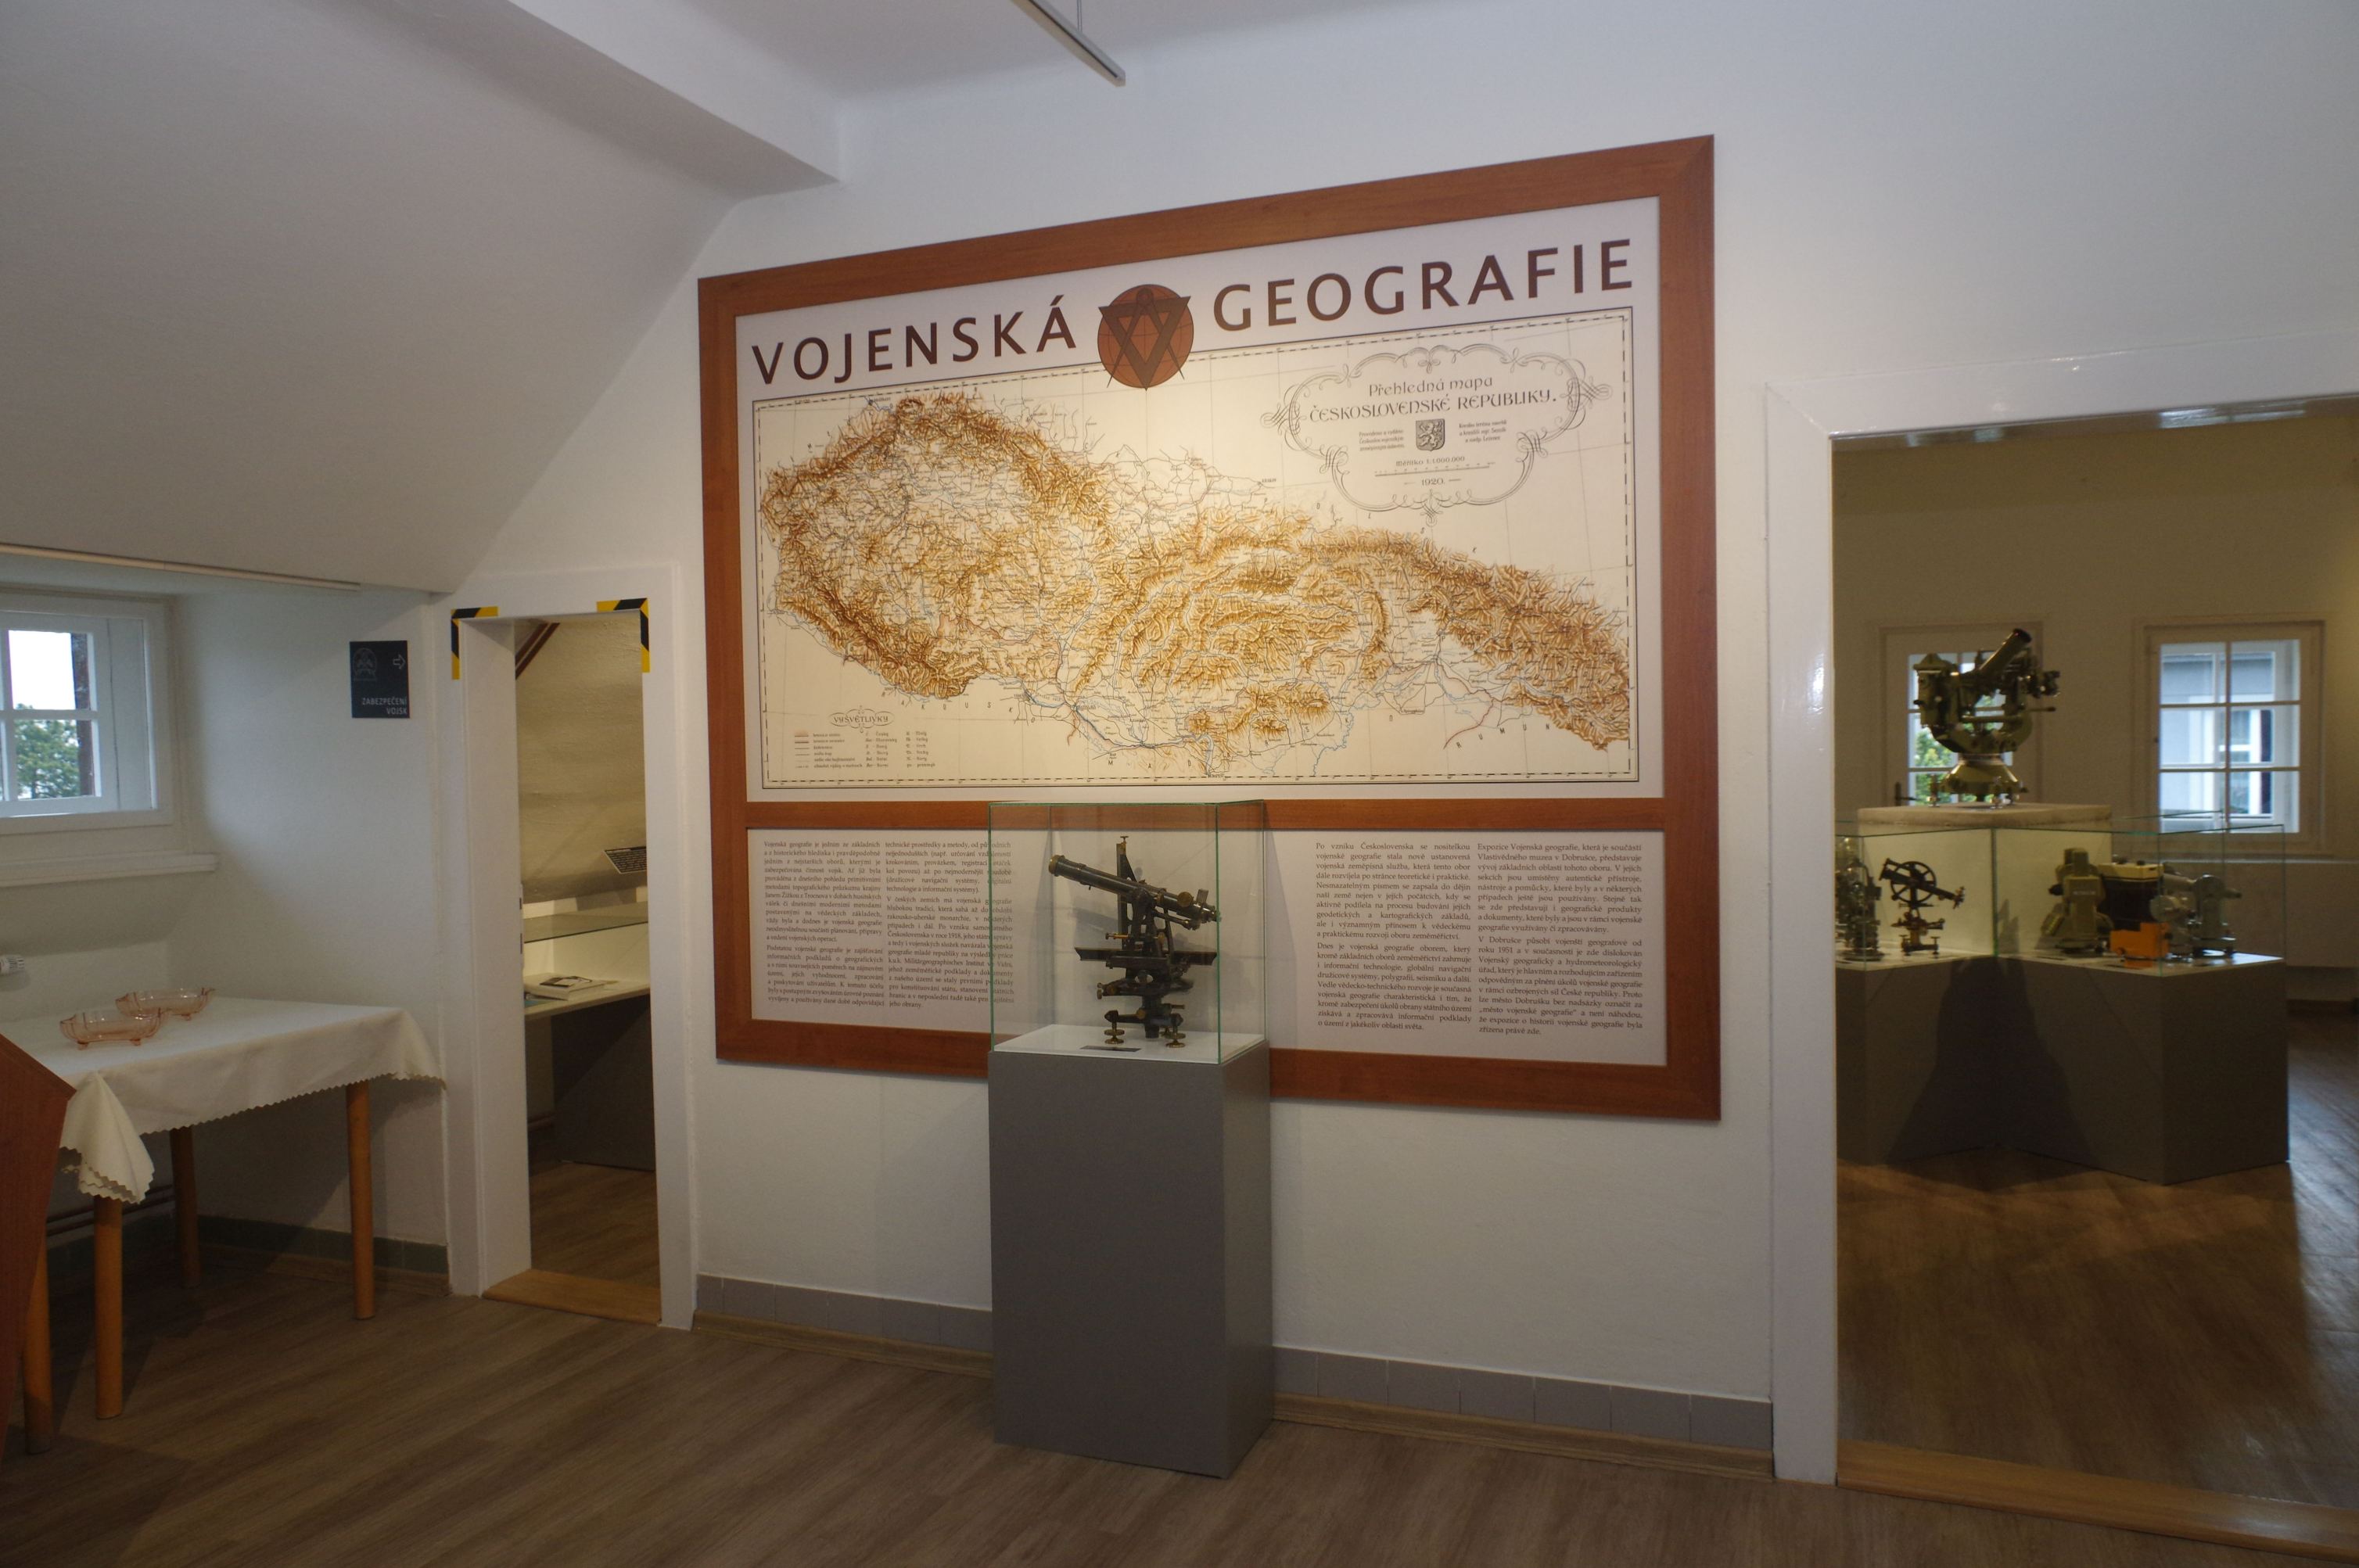 Expozice vojenské geografie v Dobrušce